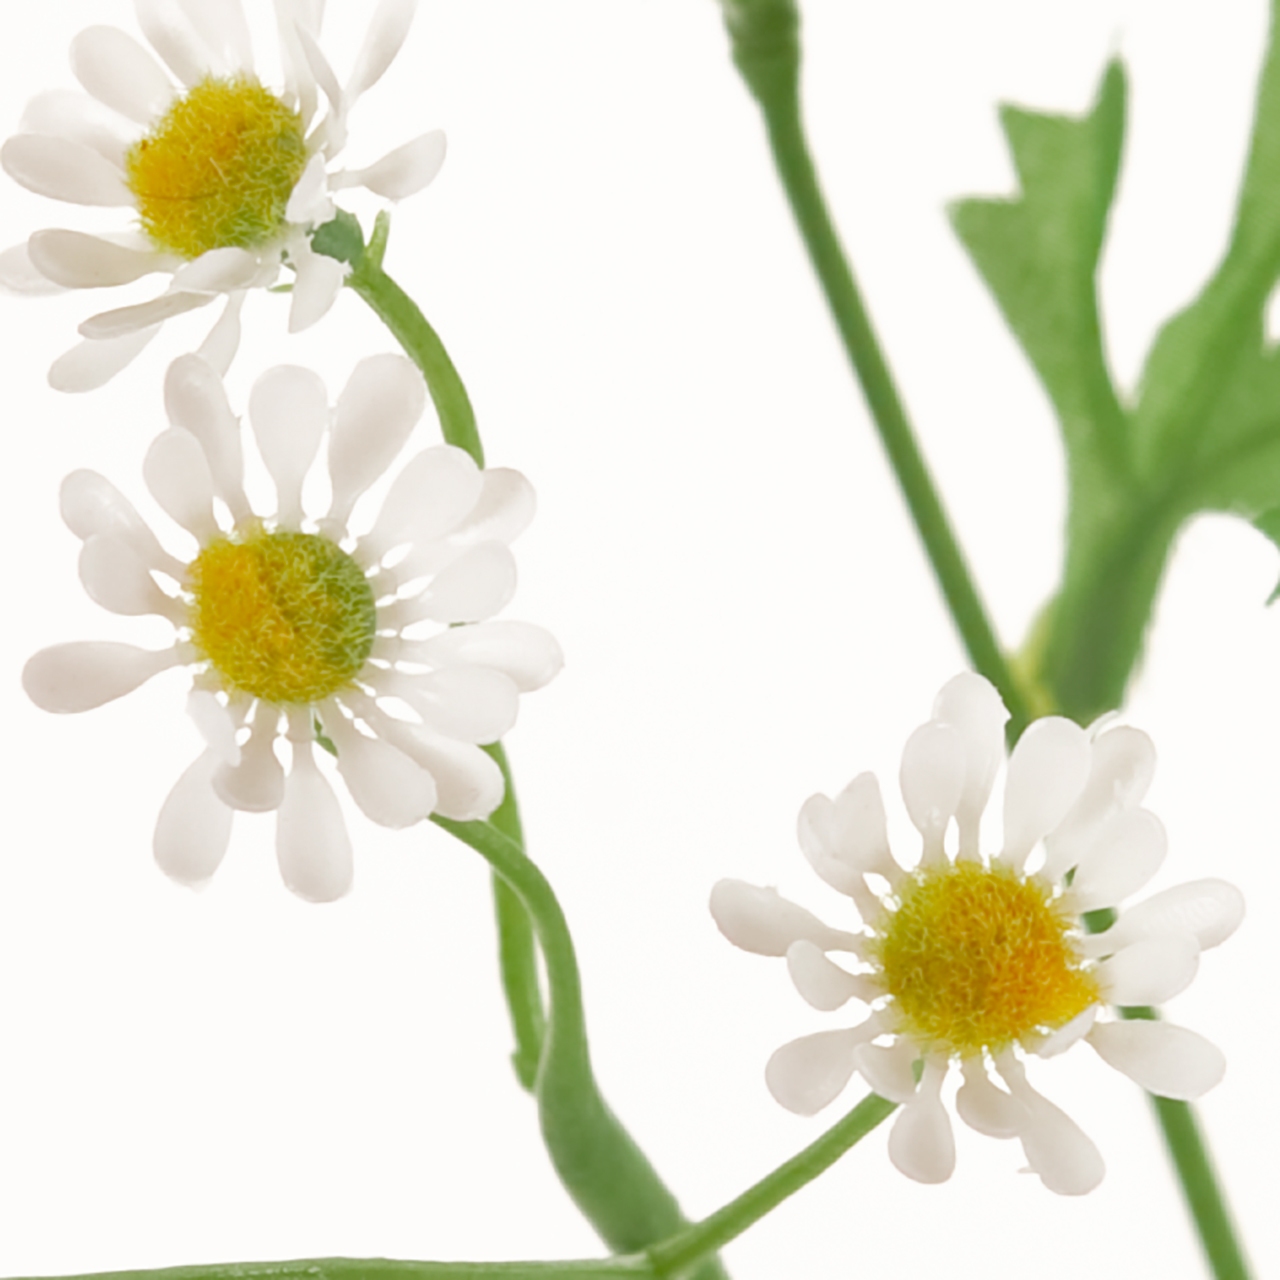 マイフラ 通販 Magiq プロヴァンスカモミール ホワイト アーティフィシャルフラワー 造花 Fm 花径 約2 全長 約53cm ホワイト Magiq アーティフィシャルフラワー 造花 全国にmagiq 花器 花資材などをお届けします